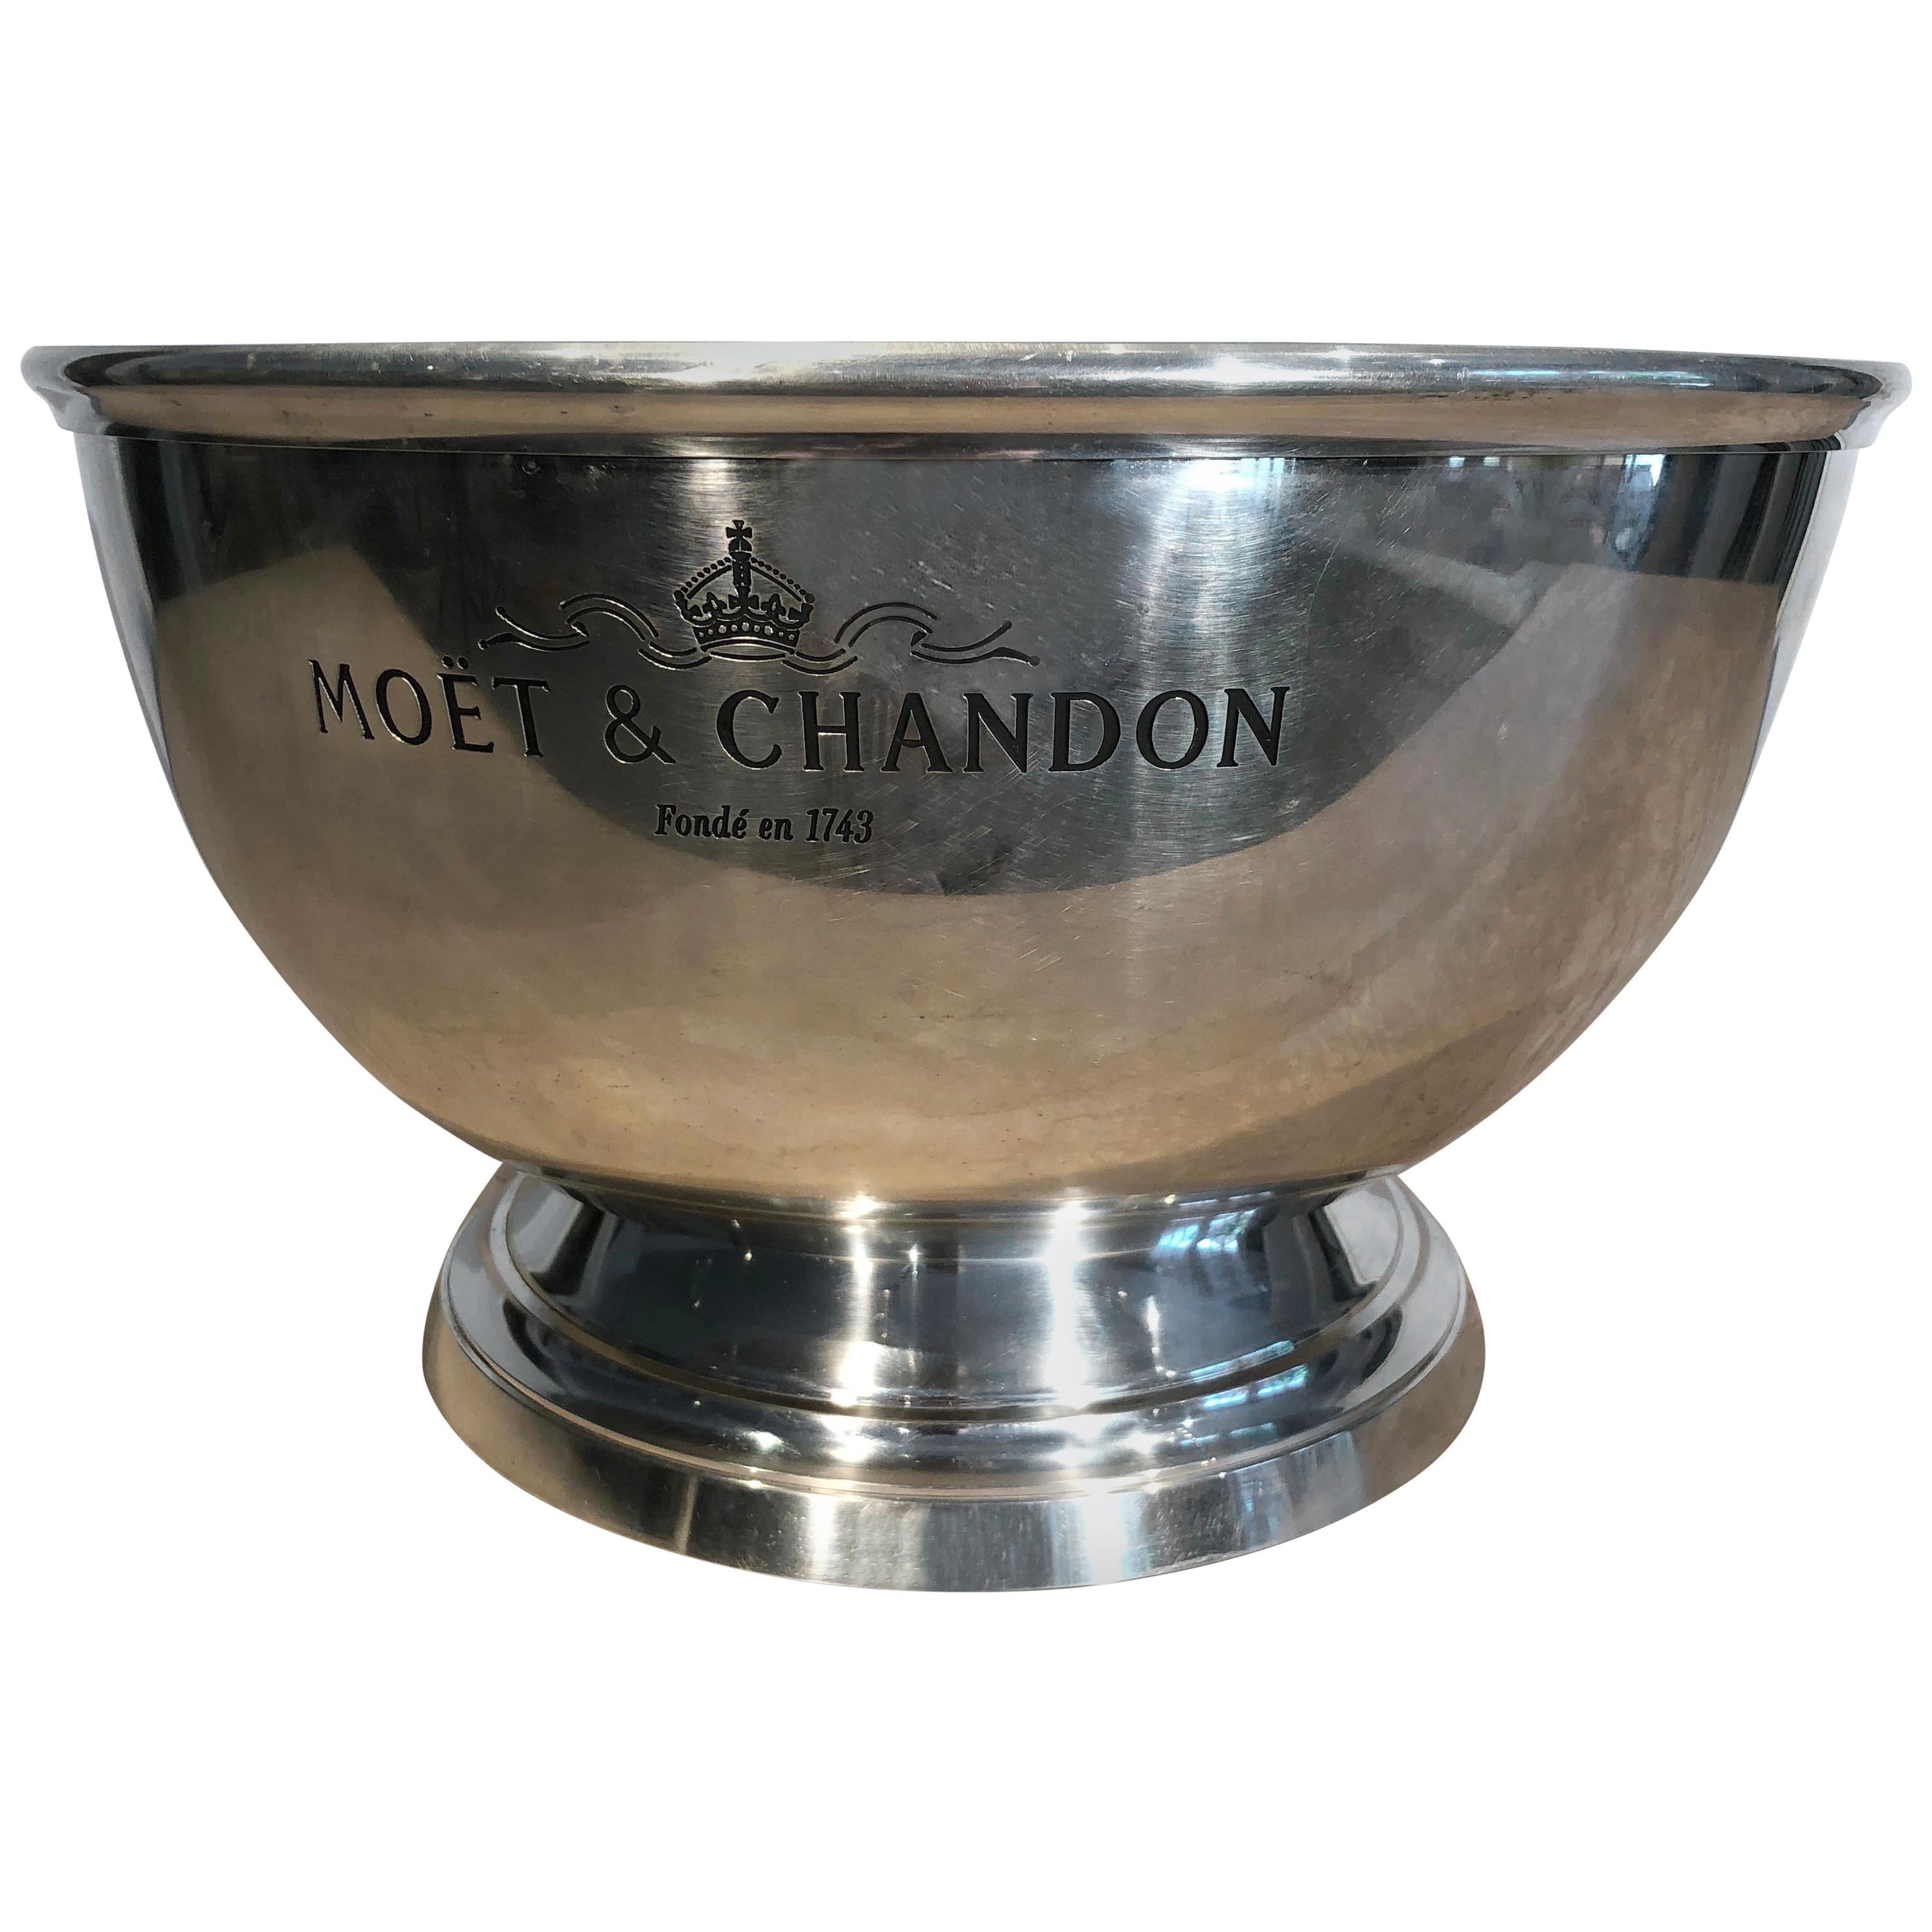 Grand "Moet et Chandon" Champagne Cooler